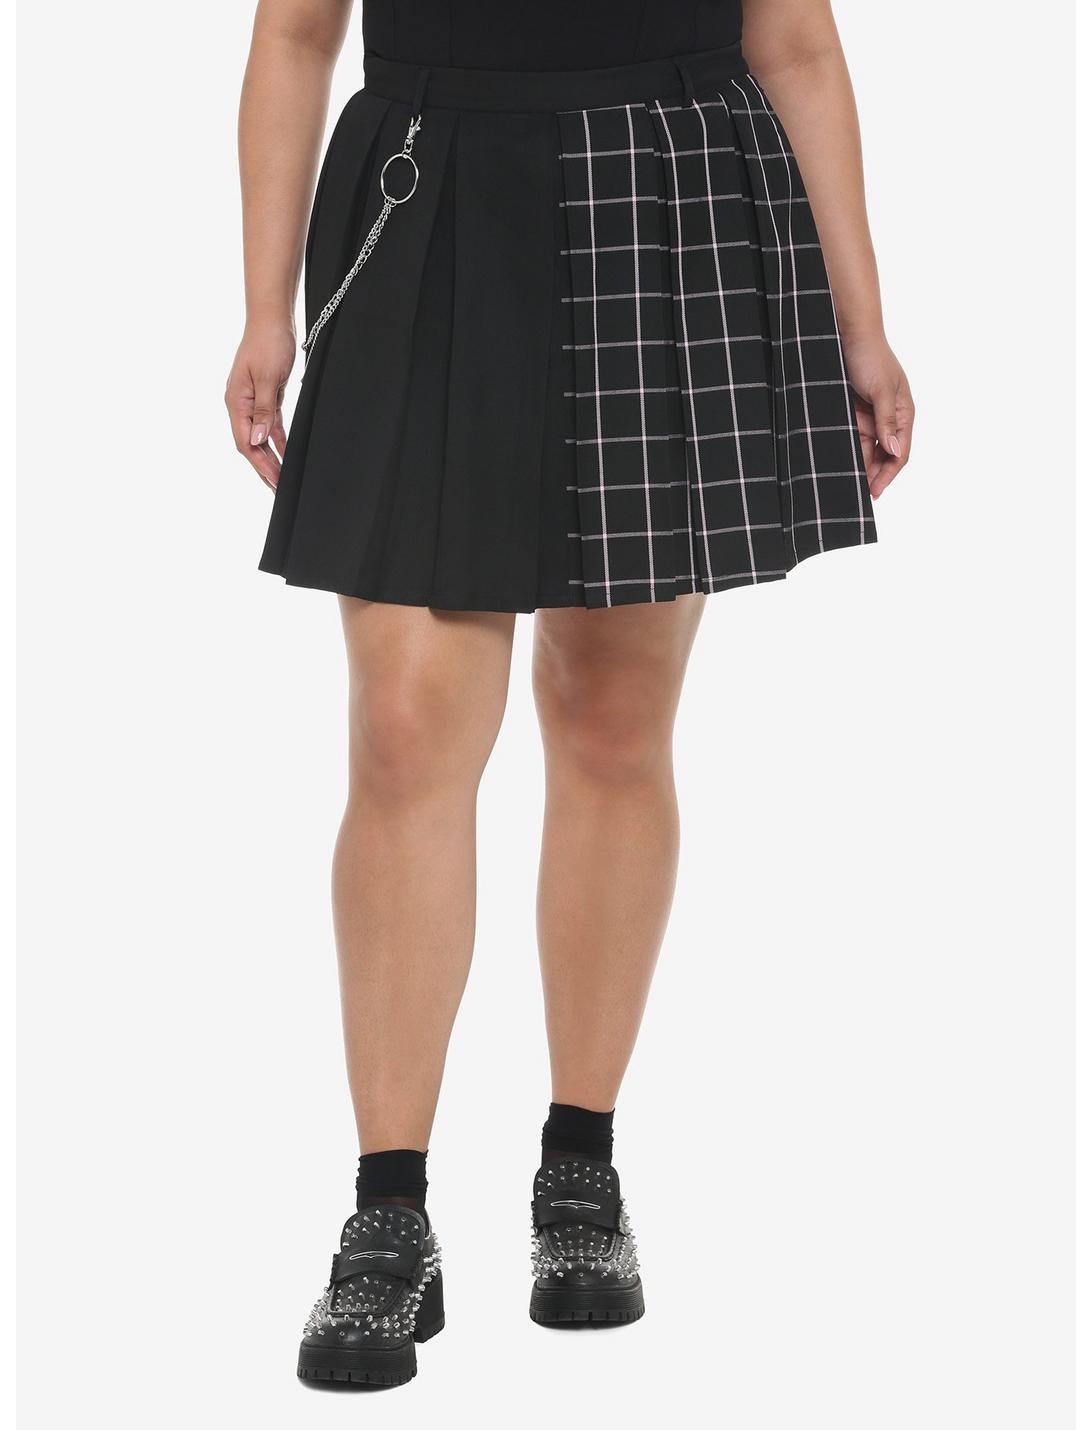 Black & Pink Plaid Split Pleated Skirt Plus Size, SPLIT GRID, hi-res